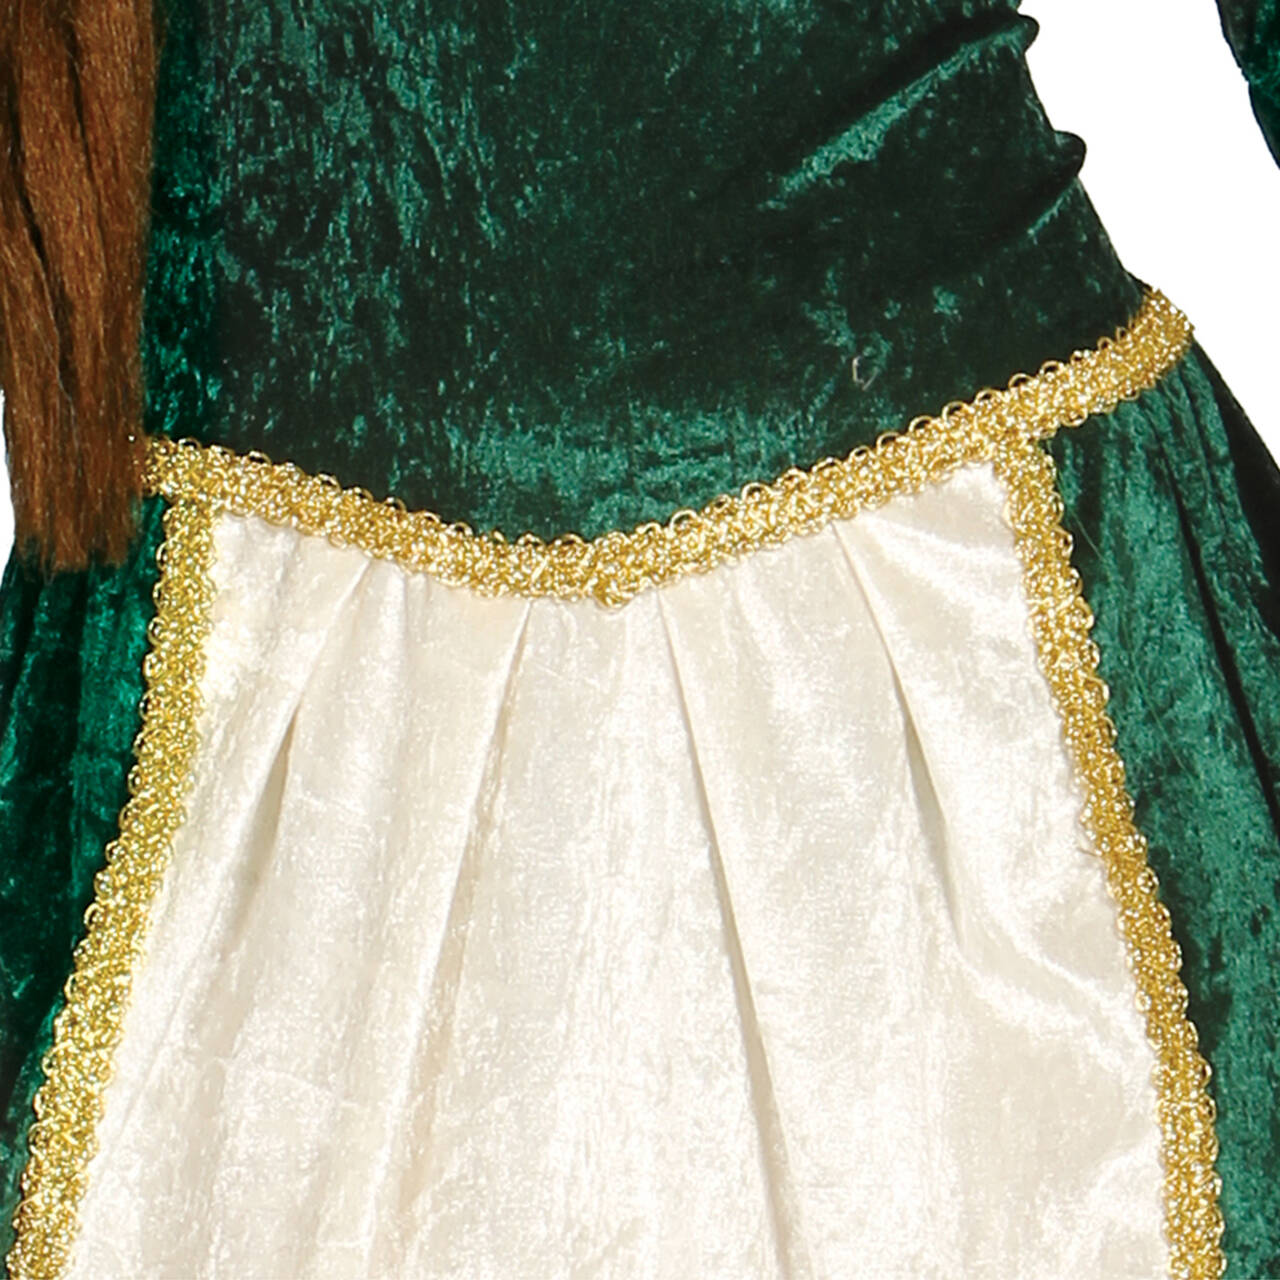 Disfraz Dama medieval verde mujer